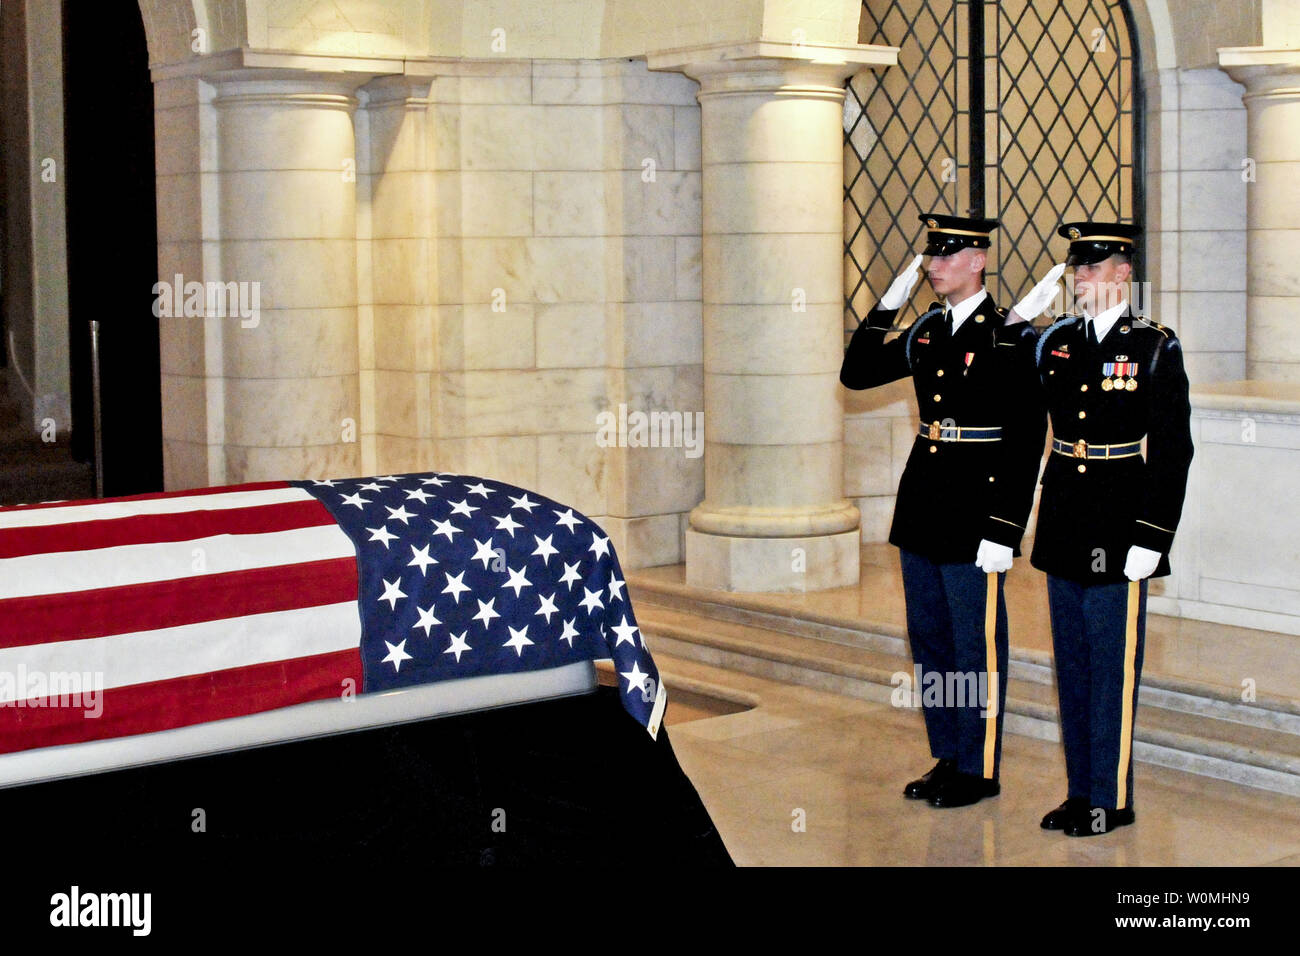 Us-Armee Soldaten salute Armee Cpl zu ehren. Frank Waldmeister Schnallen, der letzte amerikanische Welt krieg ich Veteran, während seiner Anzeige auf dem Arlington National Cemetery, Arlington, Virginia, 15. März 2011. UPI/Adora Gonzalez/US Army Stockfoto